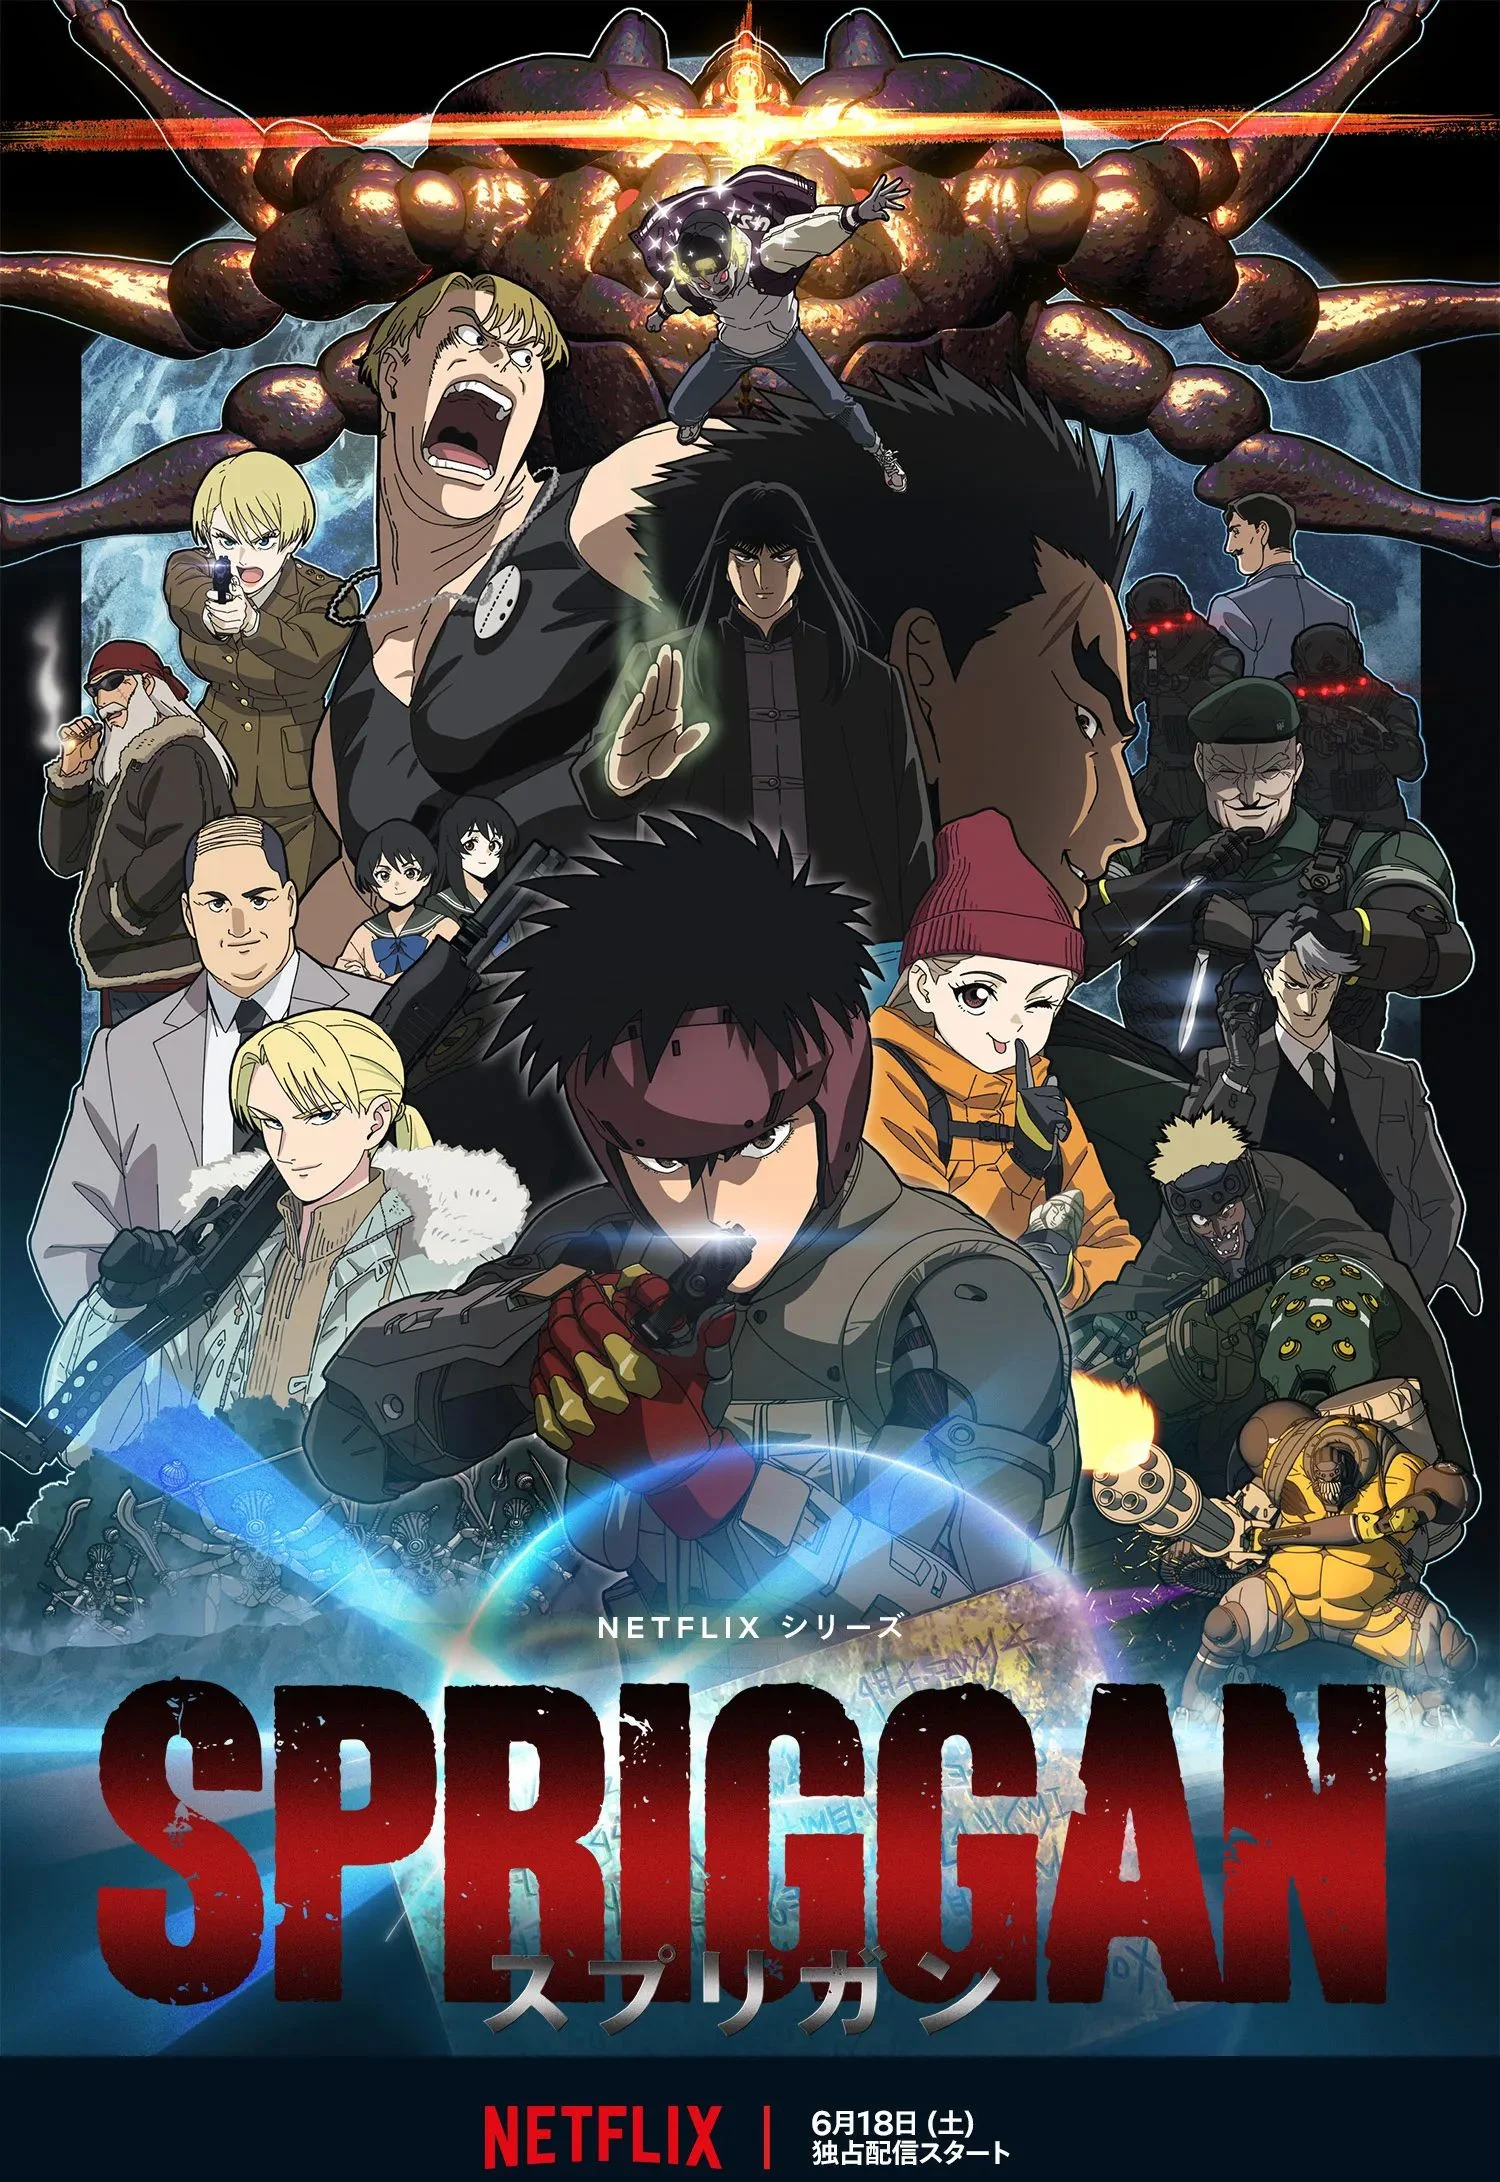 Netflix выпустил трейлер аниме-сериала Spriggan по мотивам одноименной манги - фото 1